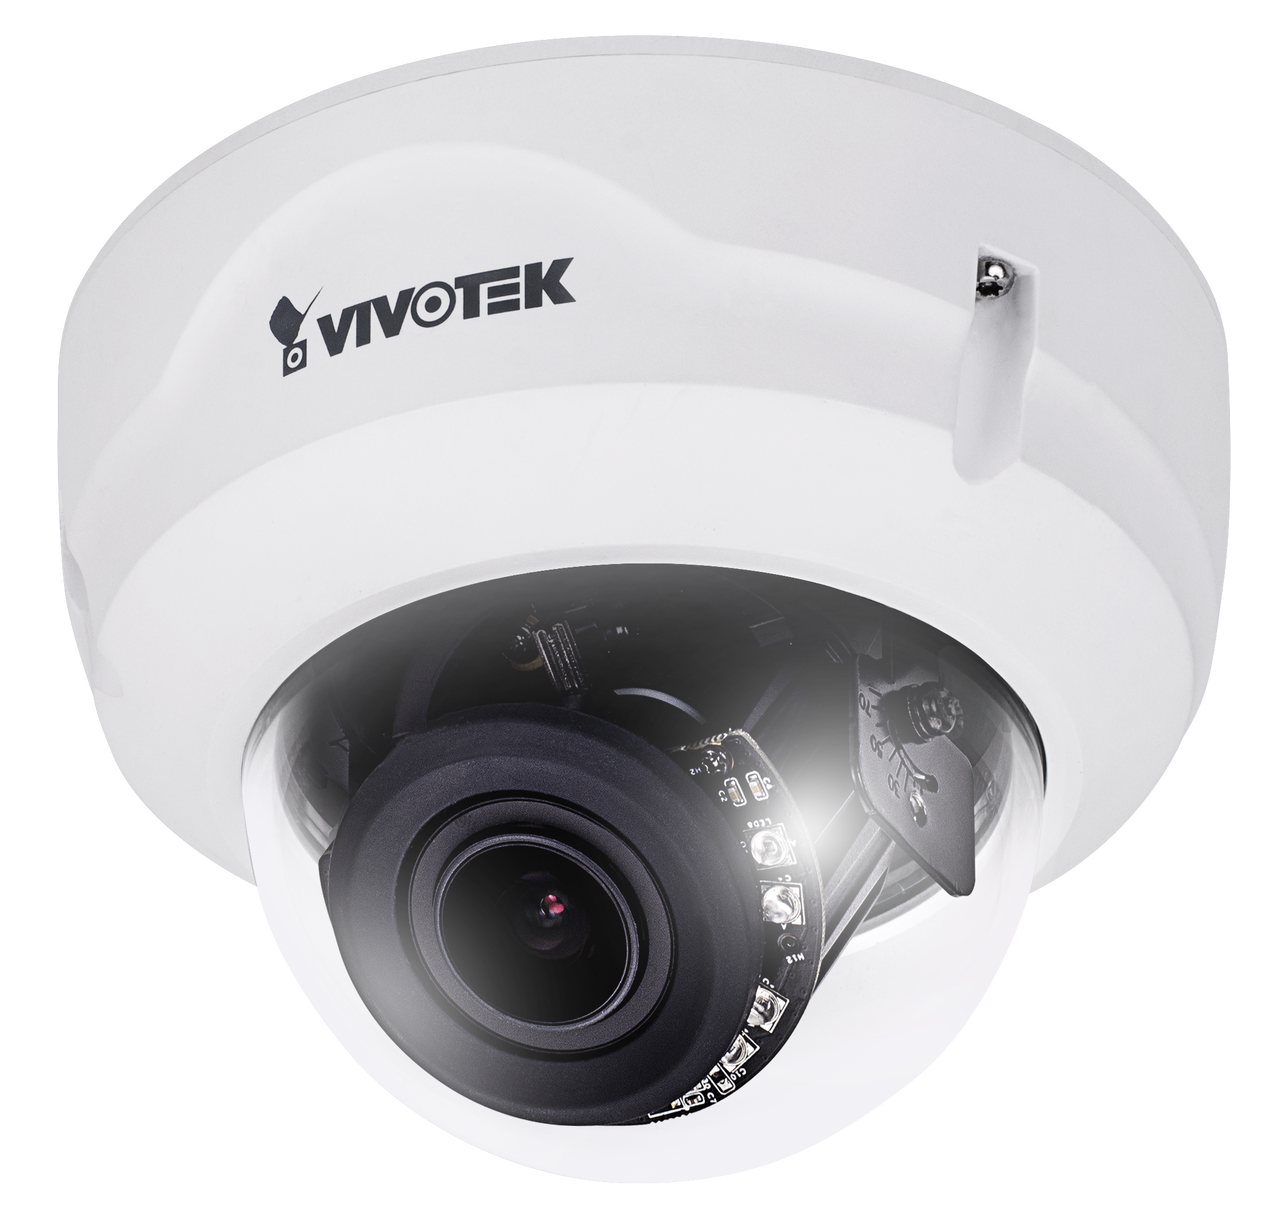 Vivotek FD8367A-V Dome Network Camera